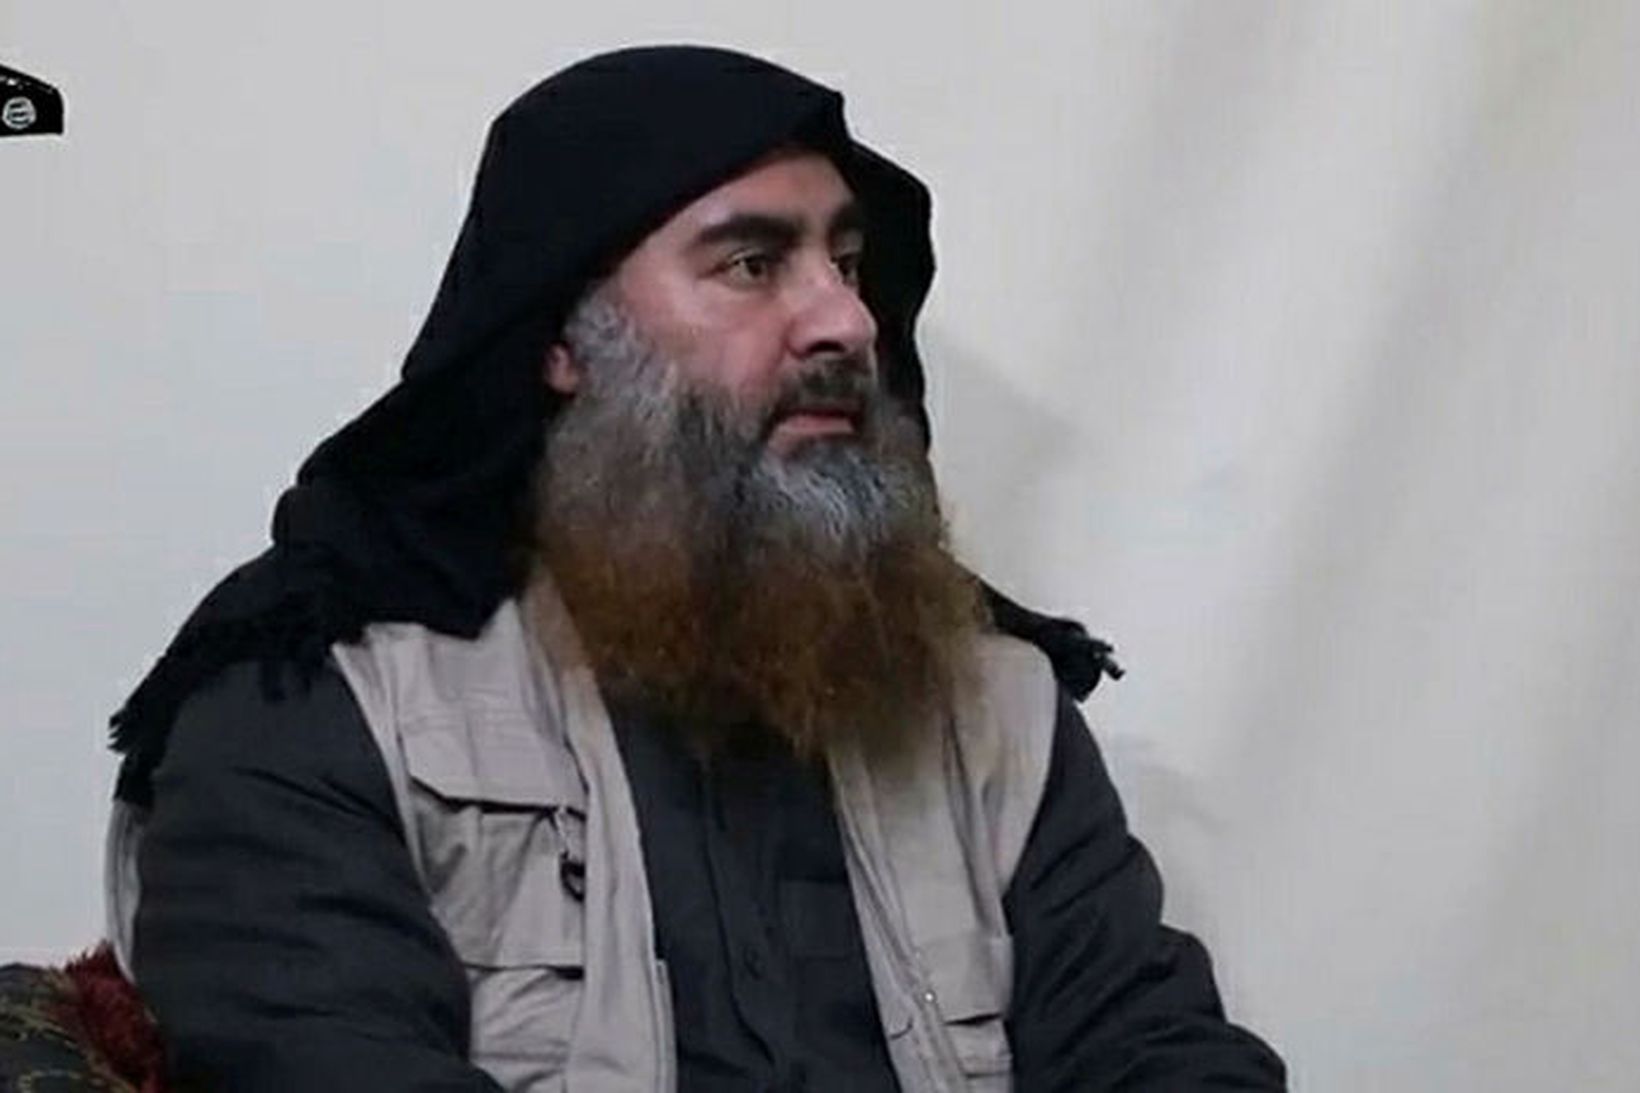 Abu Bakr al-Baghdadi fyrrum leiðtogi ríkis íslams.